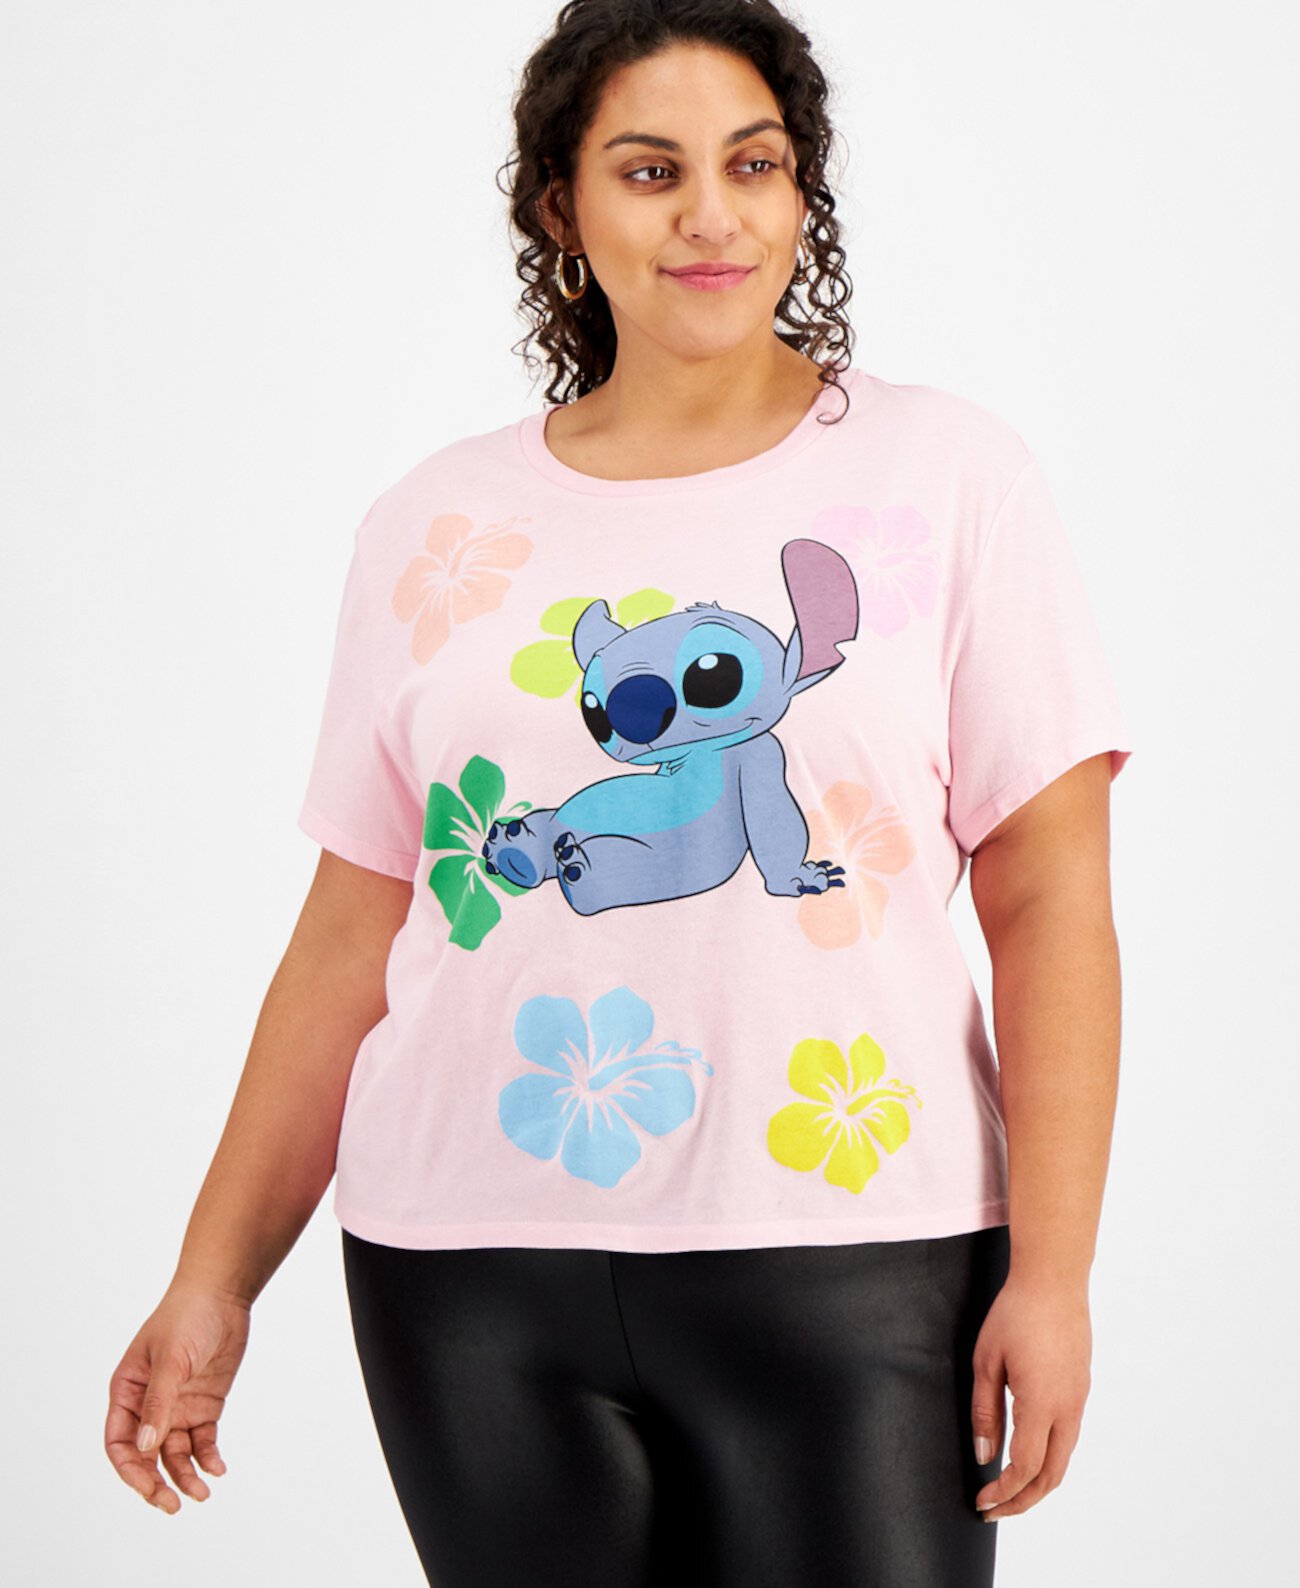 Модная футболка большого размера с цветочным принтом и стежком Freeze 24-7